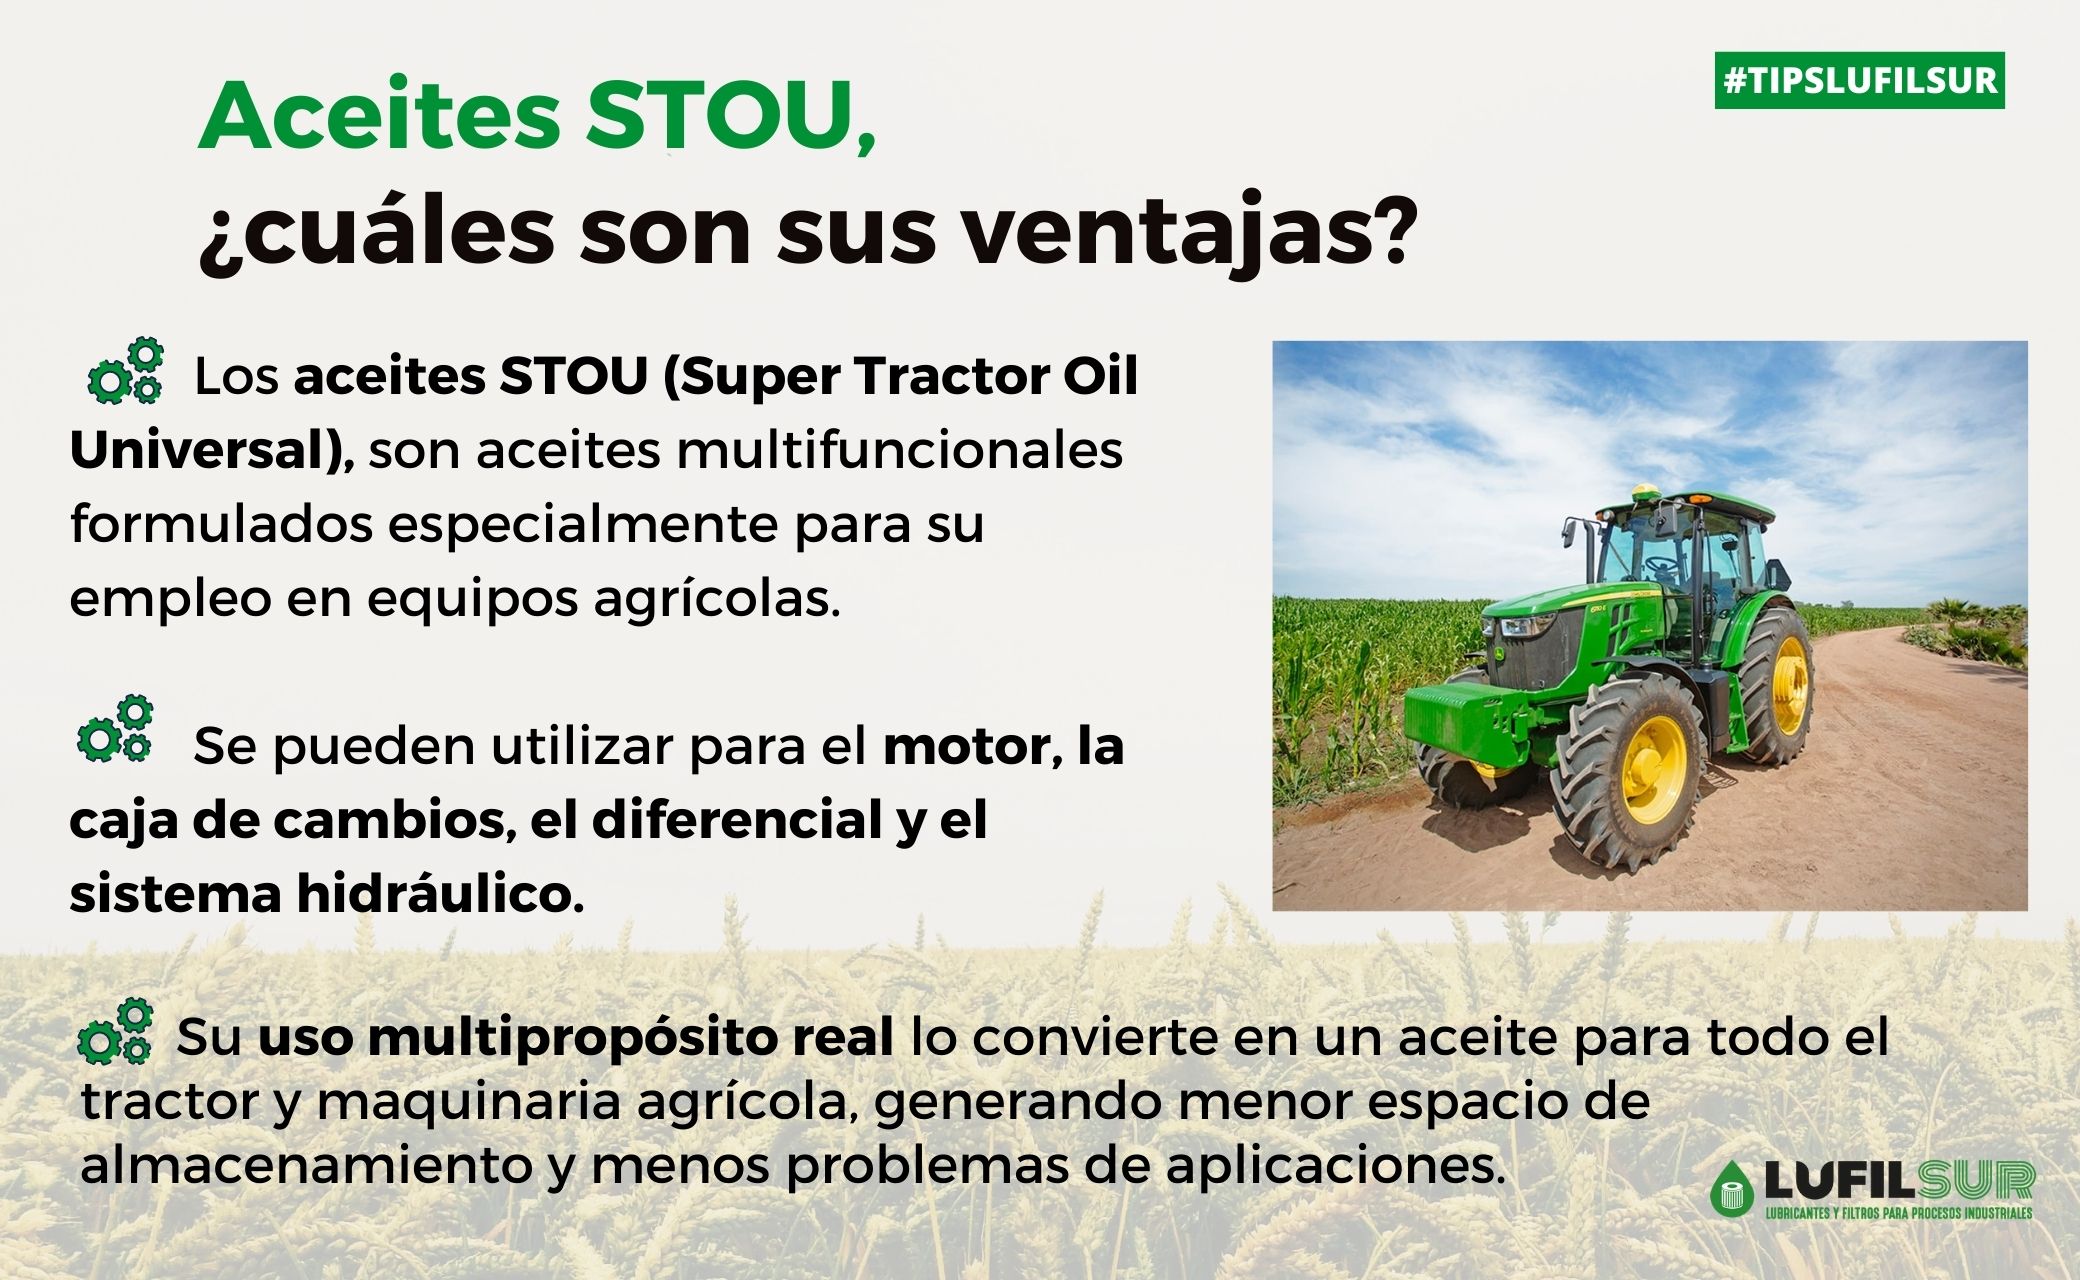 Los aceites STOU ofrecen altas prestaciones en maquinaria agricola